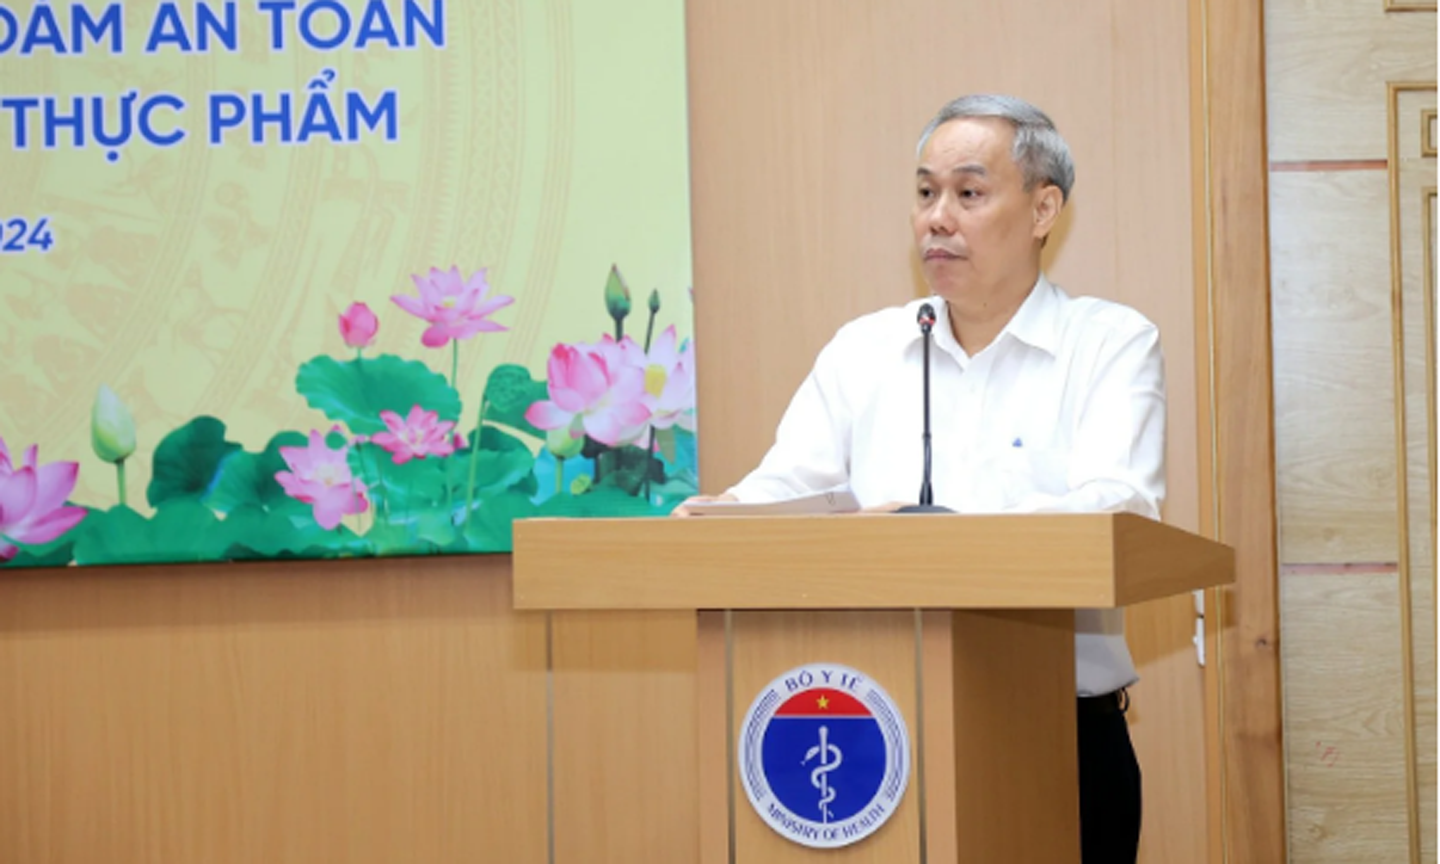 TS Nguyễn Hùng Long - Phó Cục trưởng Cục An toàn thực phẩm báo cáo tại hội nghị.